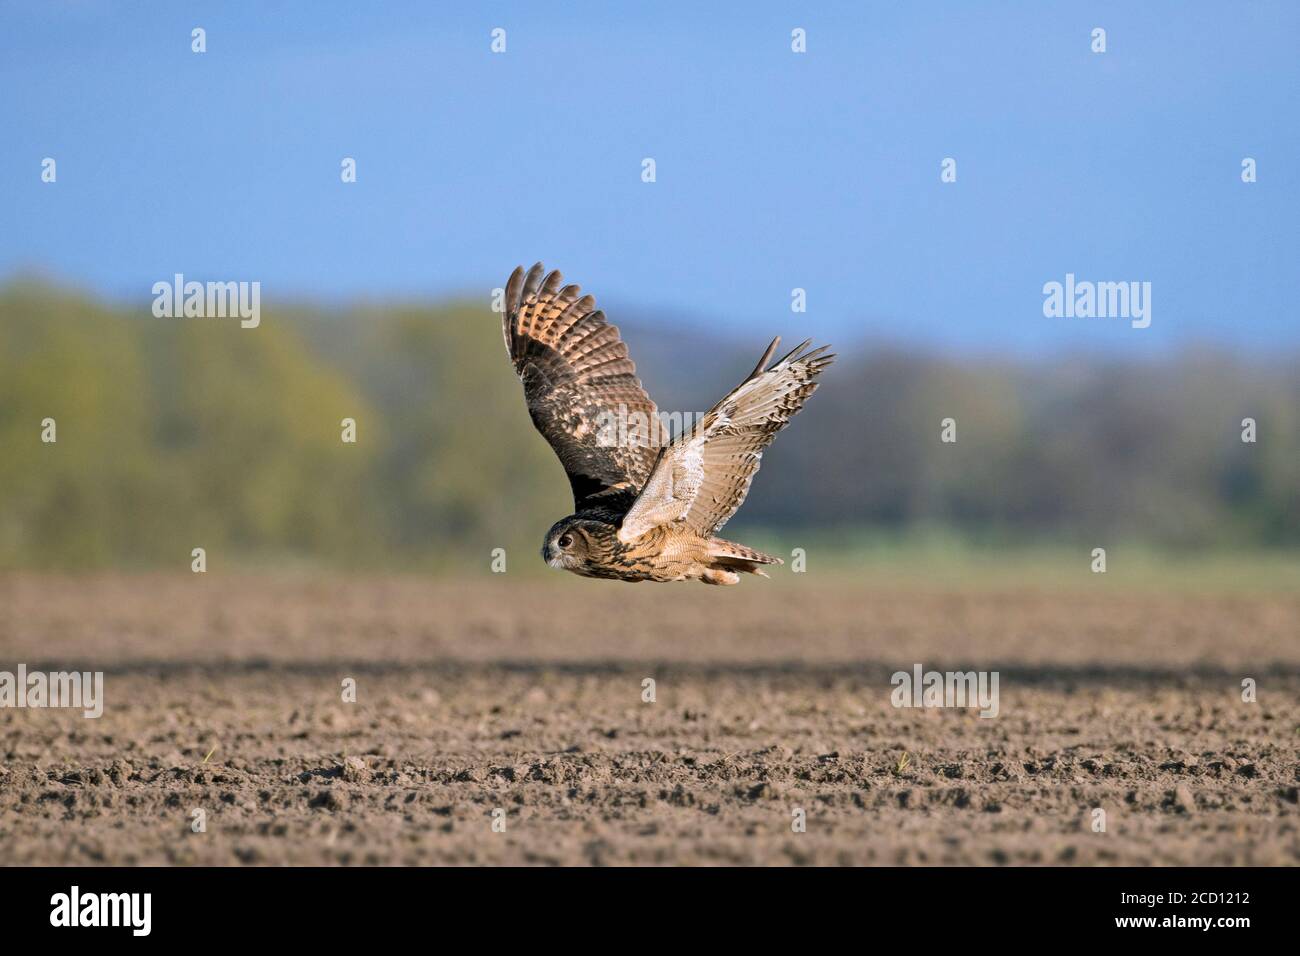 La chouette-aigle eurasienne / la chouette-aigle européenne (Bubo bubo) en vol, chasse au-dessus des champs / terres agricoles Banque D'Images